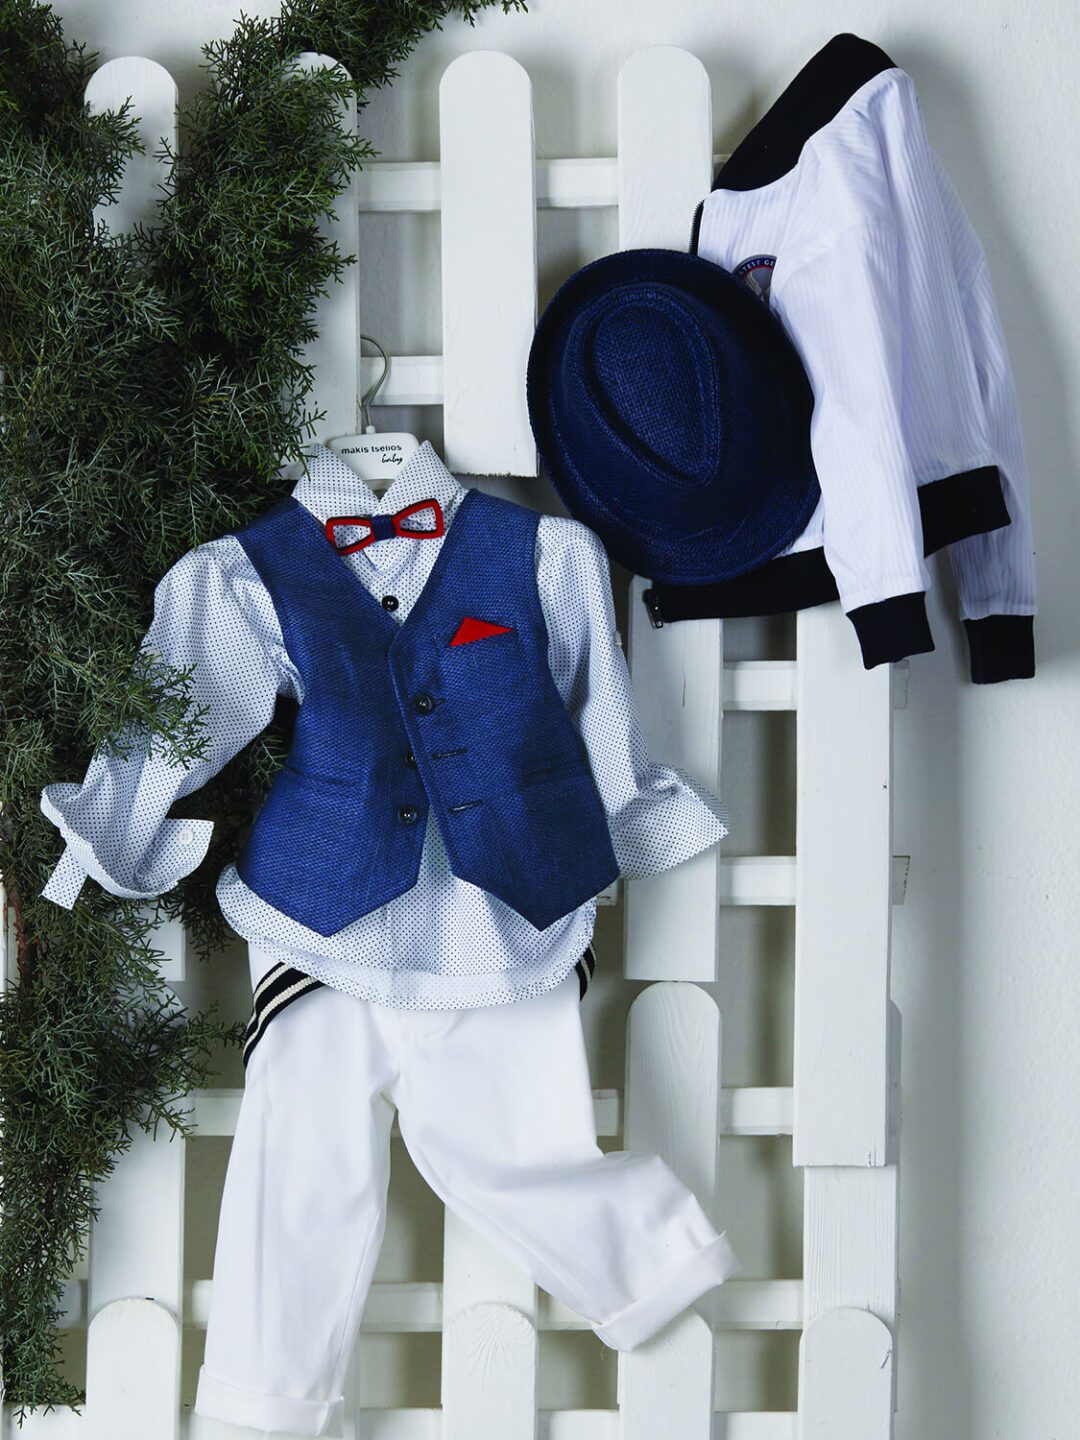 Βαπτιστικό ρούχο για αγόρι σε navy blue με άσπρο